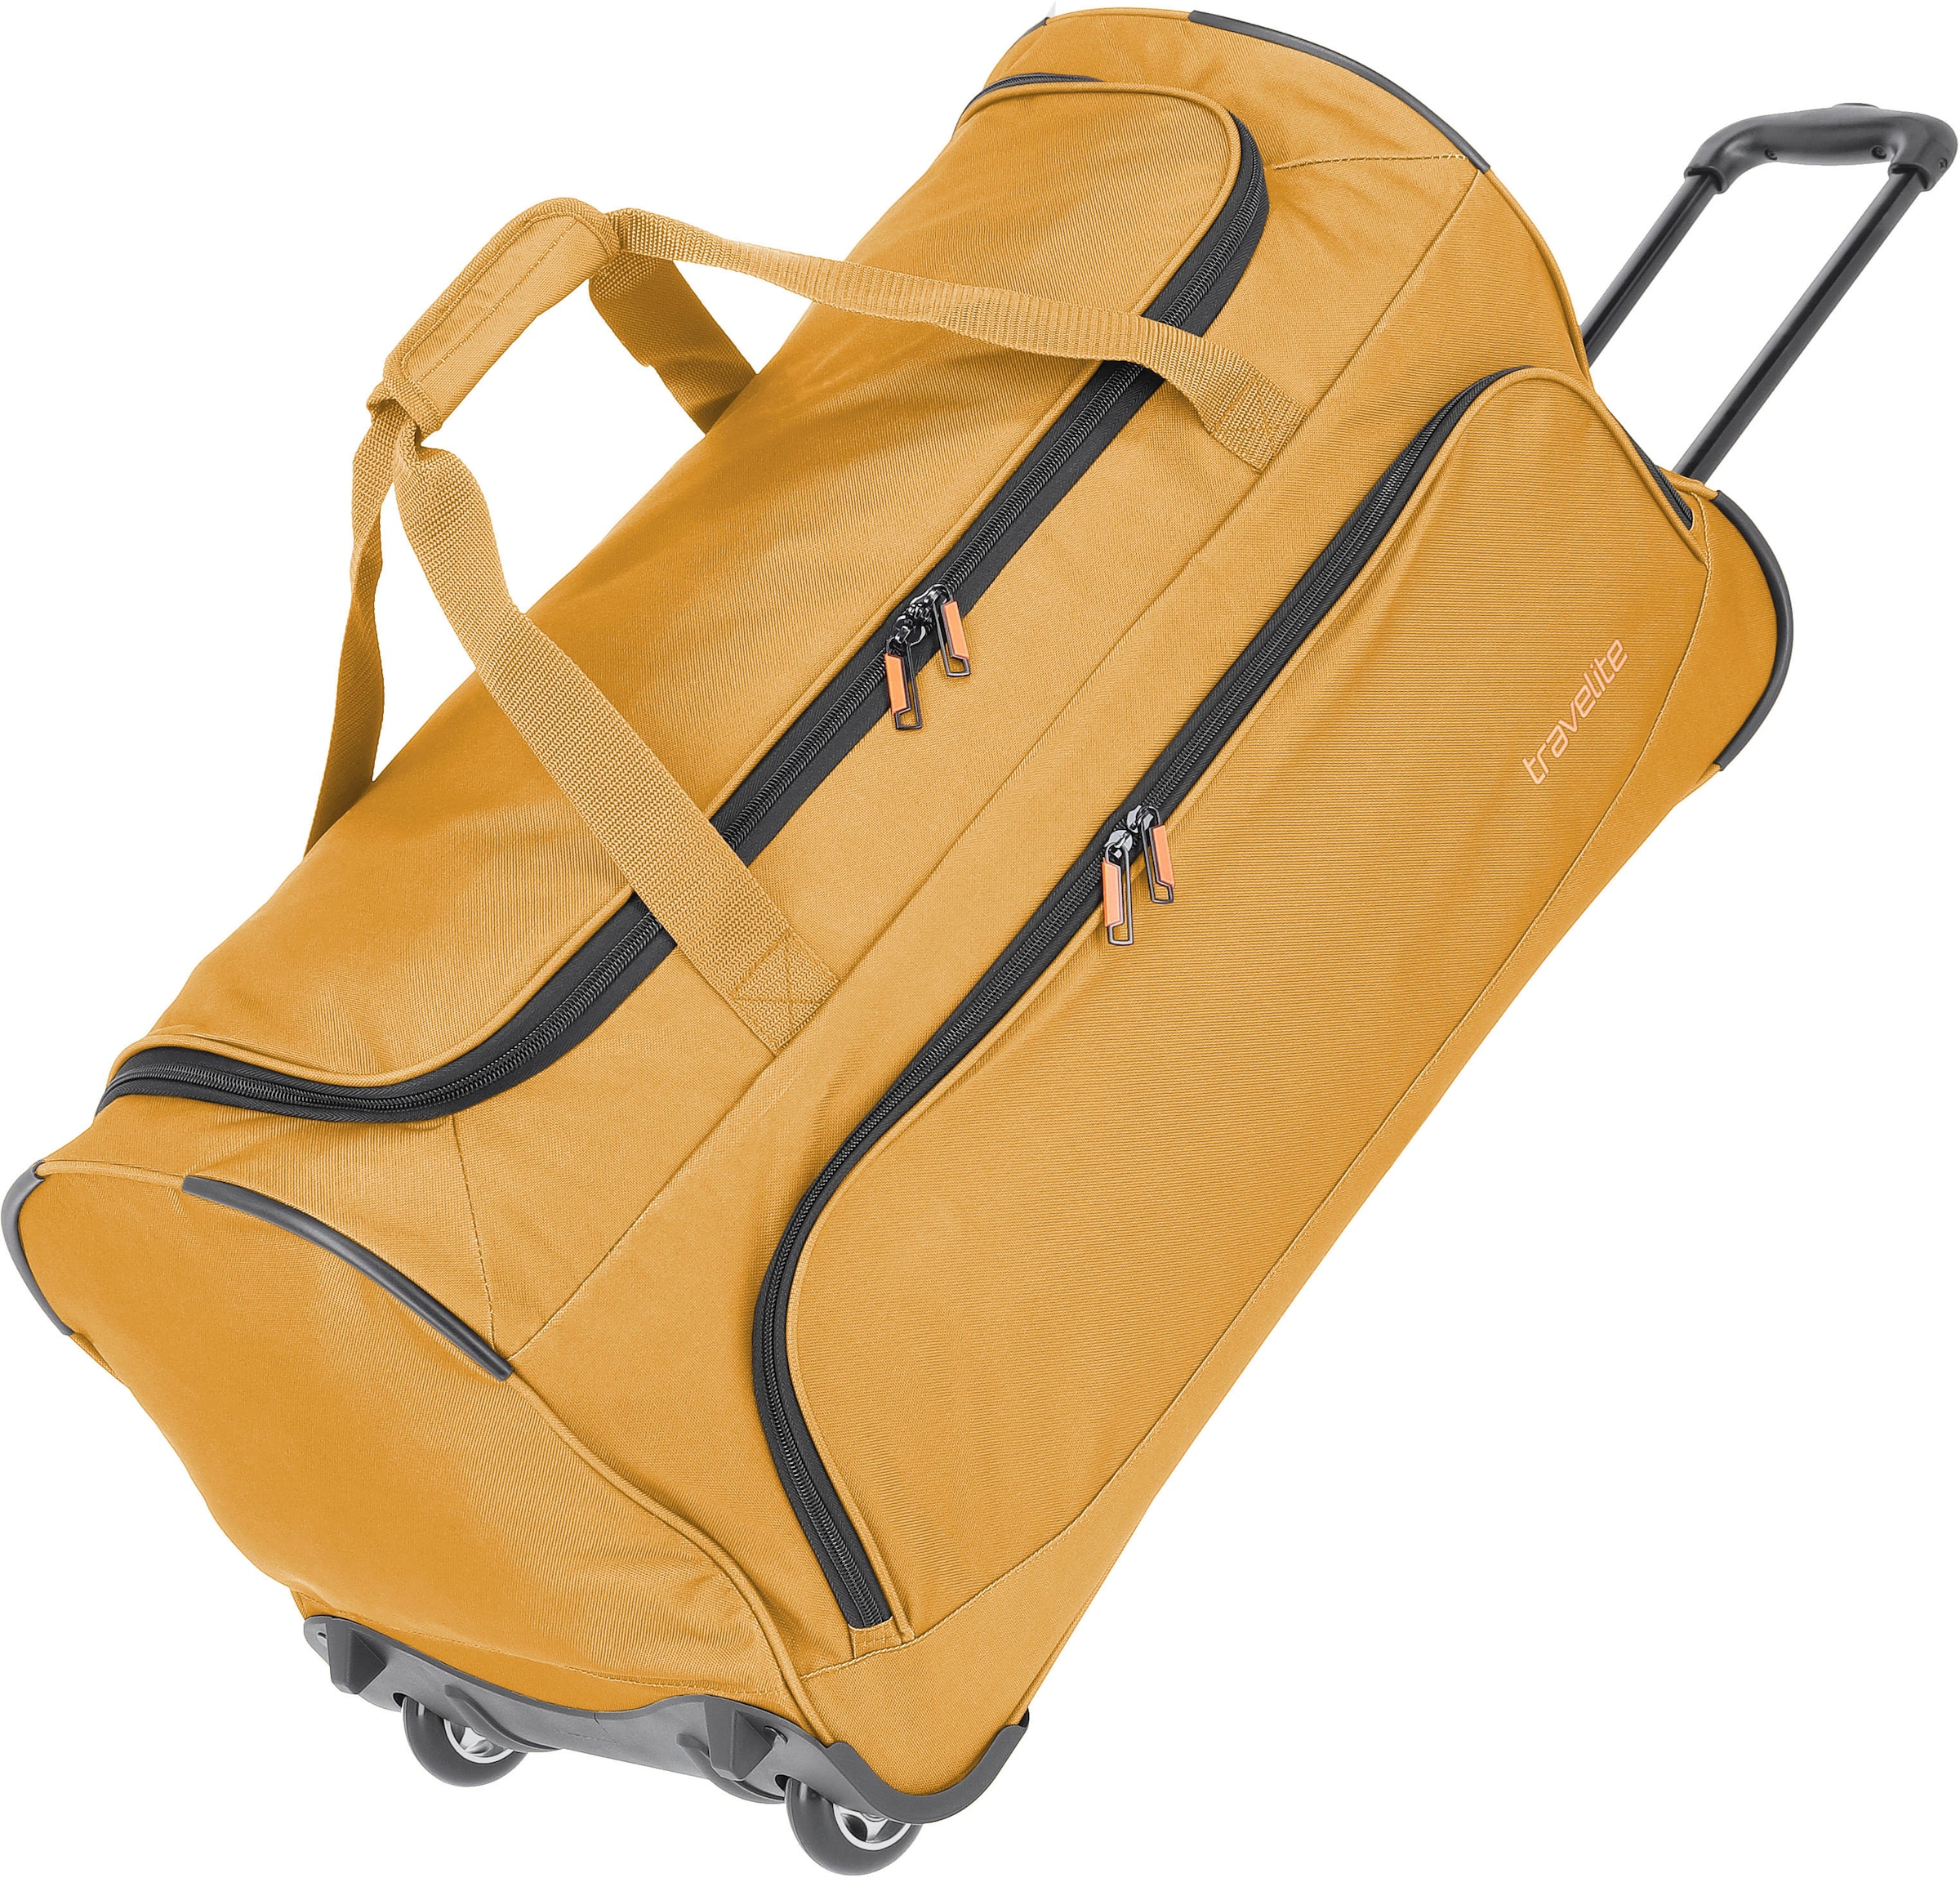 jeden Reisegepäck kaufen für günstig Anlass online